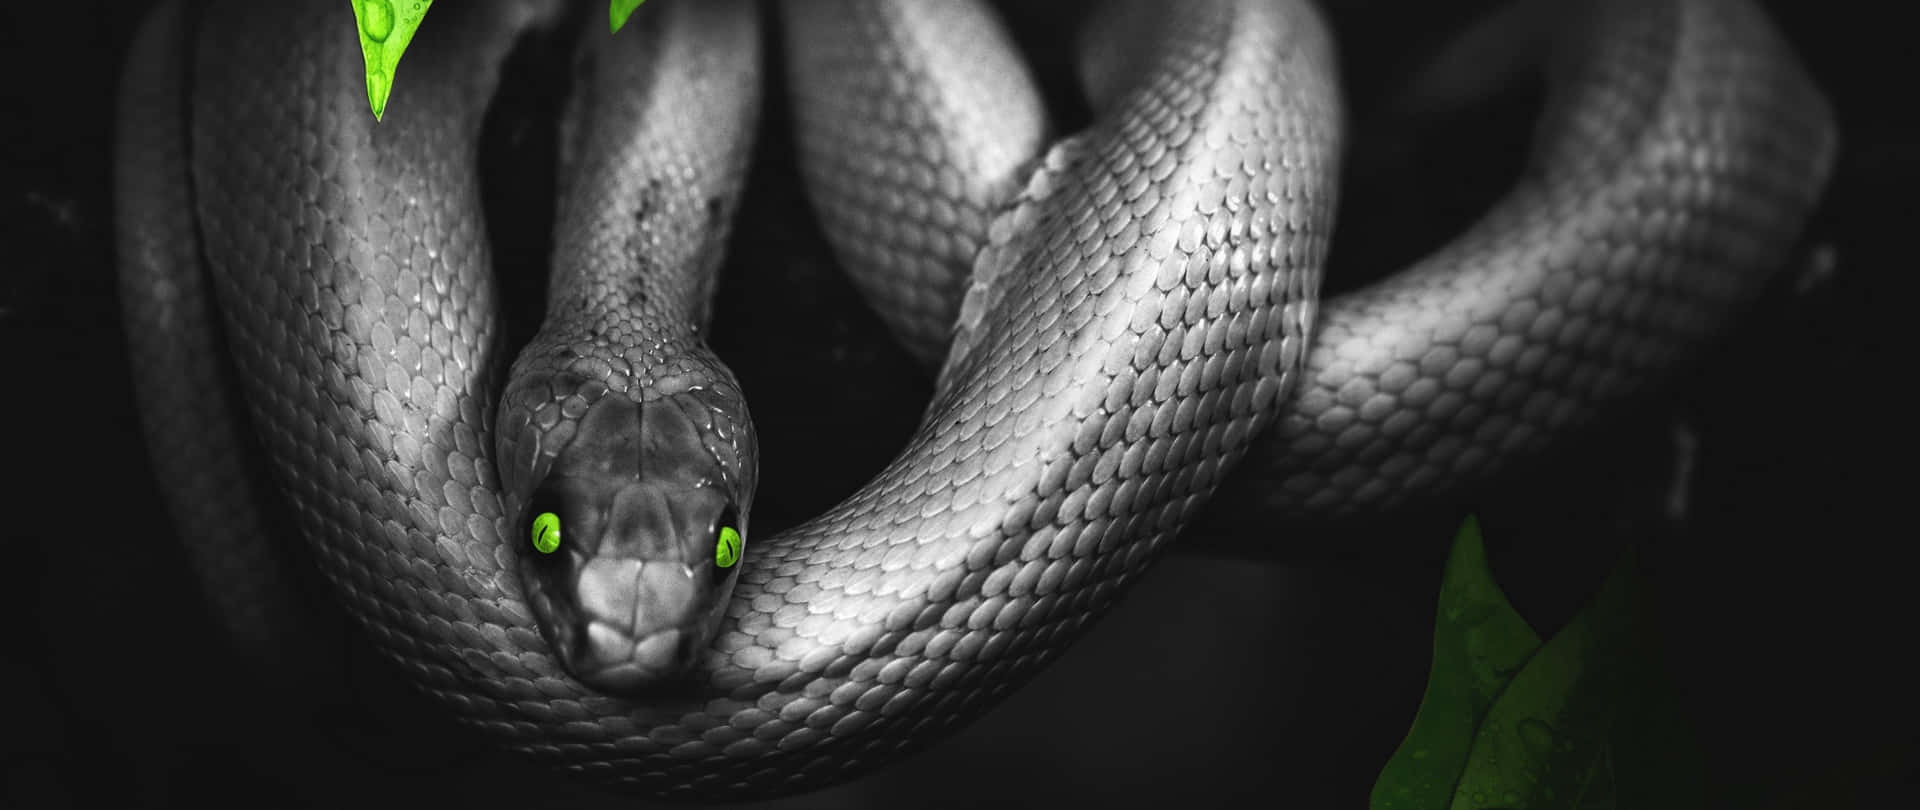 Fondode Edición De Serpiente Con Ojos Verdes.